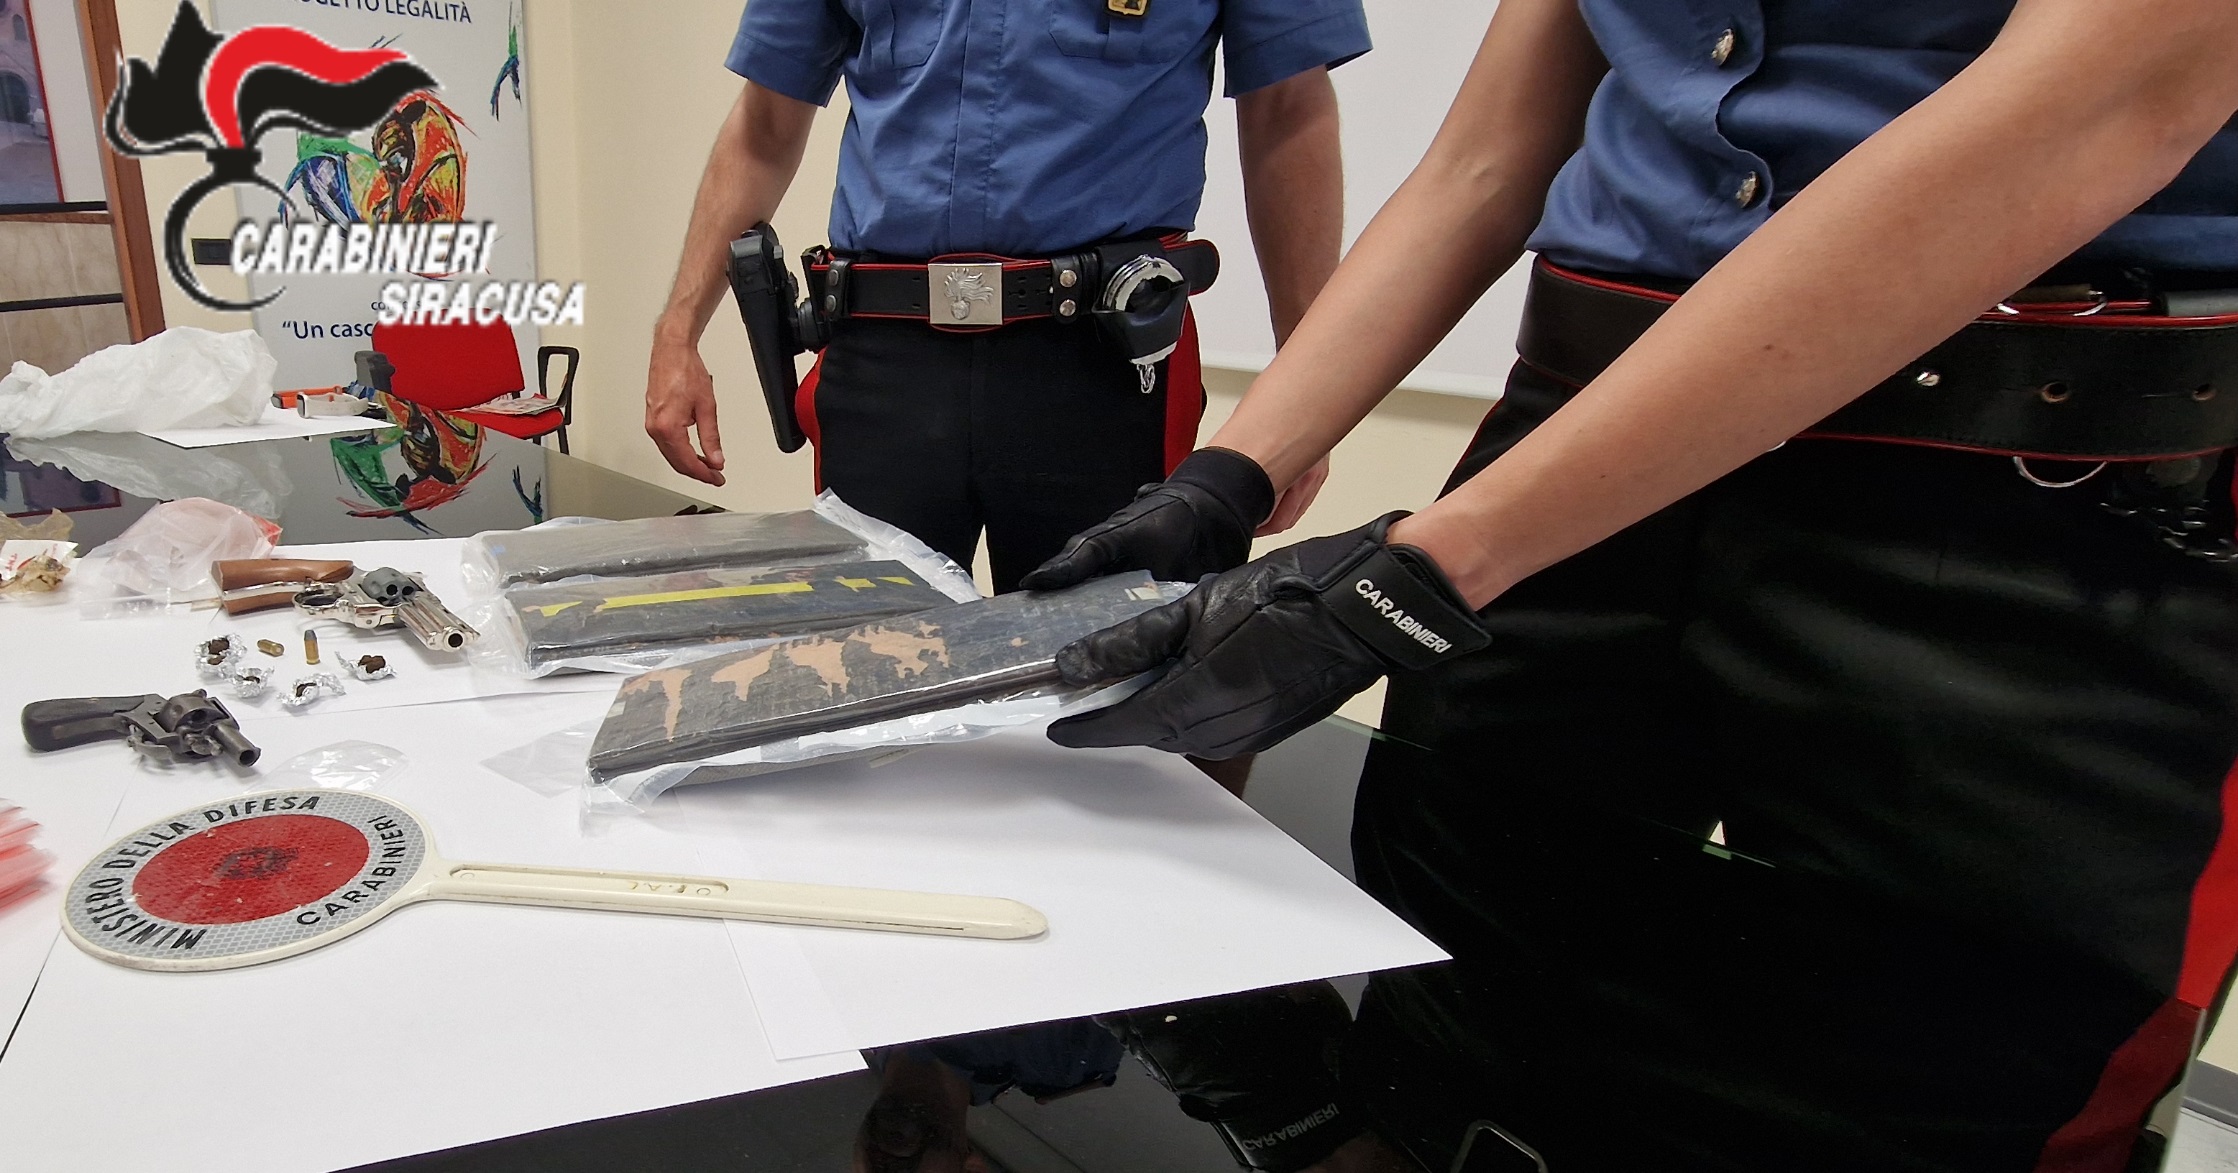 A spasso con uno zaino “sospetto”, trasportava oltre 3 kg di cocaina: in casa 2 pistole e altra droga